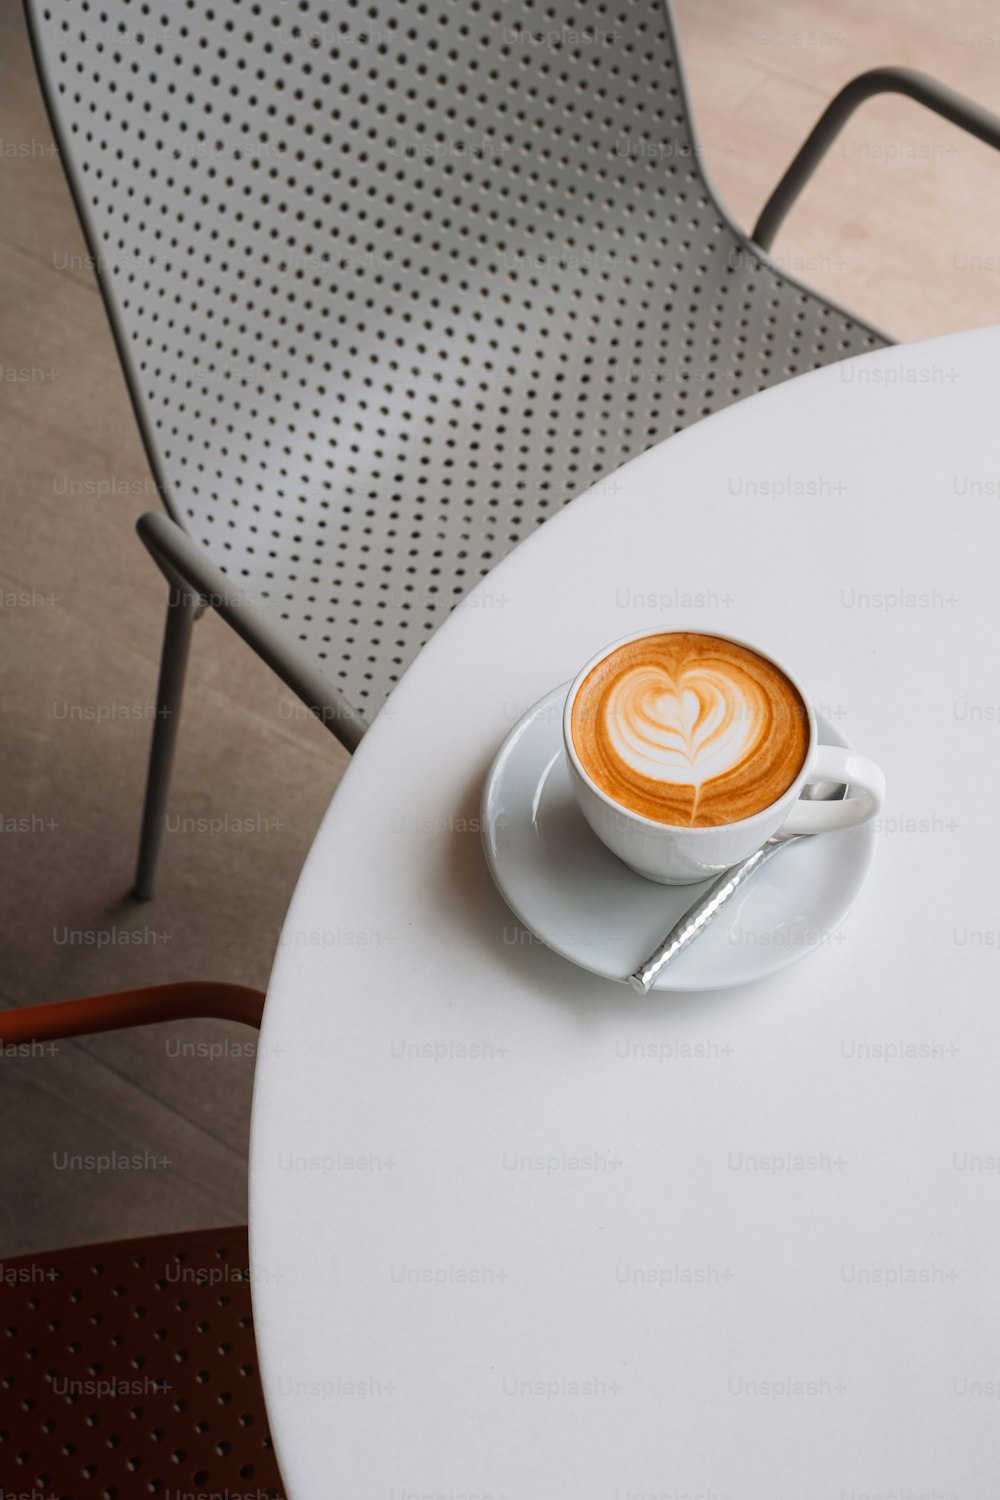 Un cappuccino est posé sur une soucoupe sur une table blanche